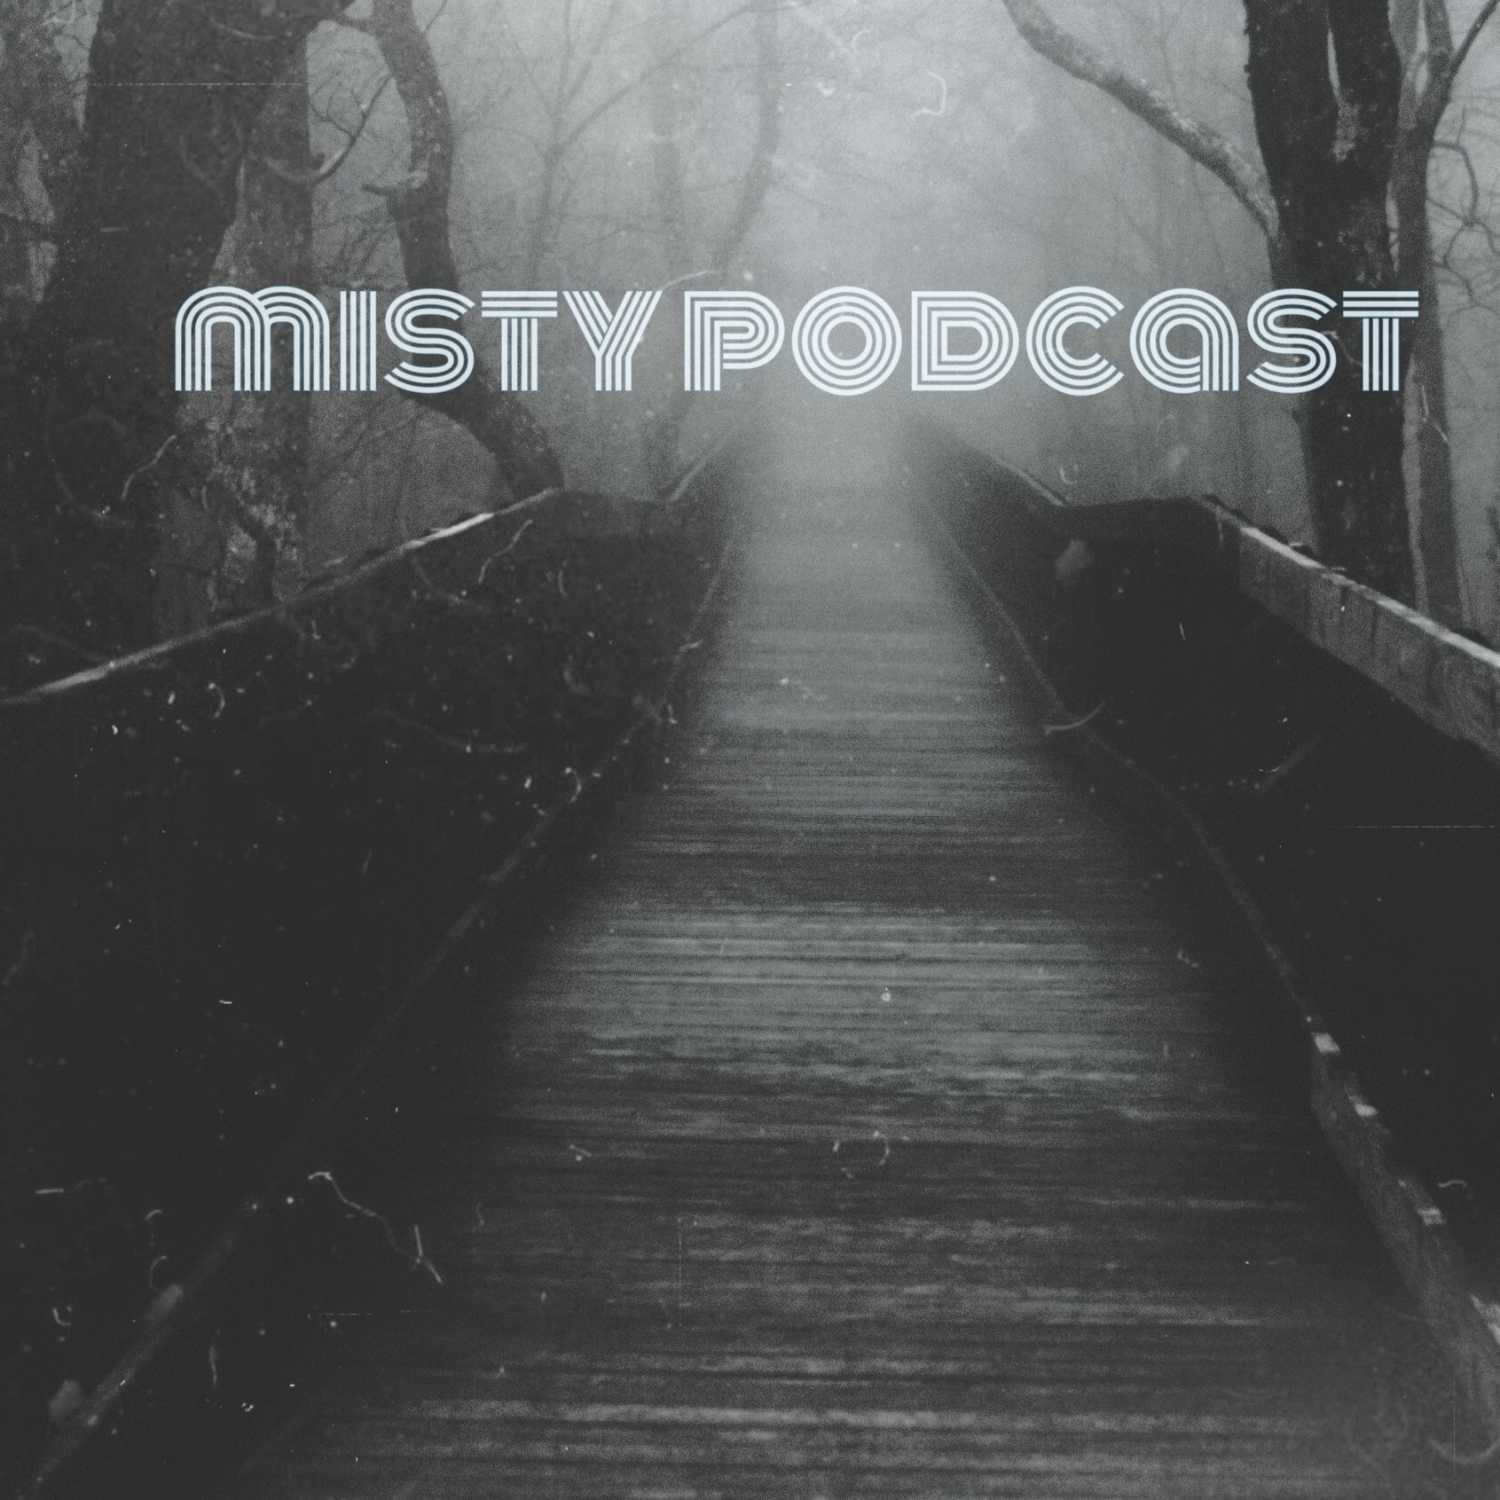 Misty podcast